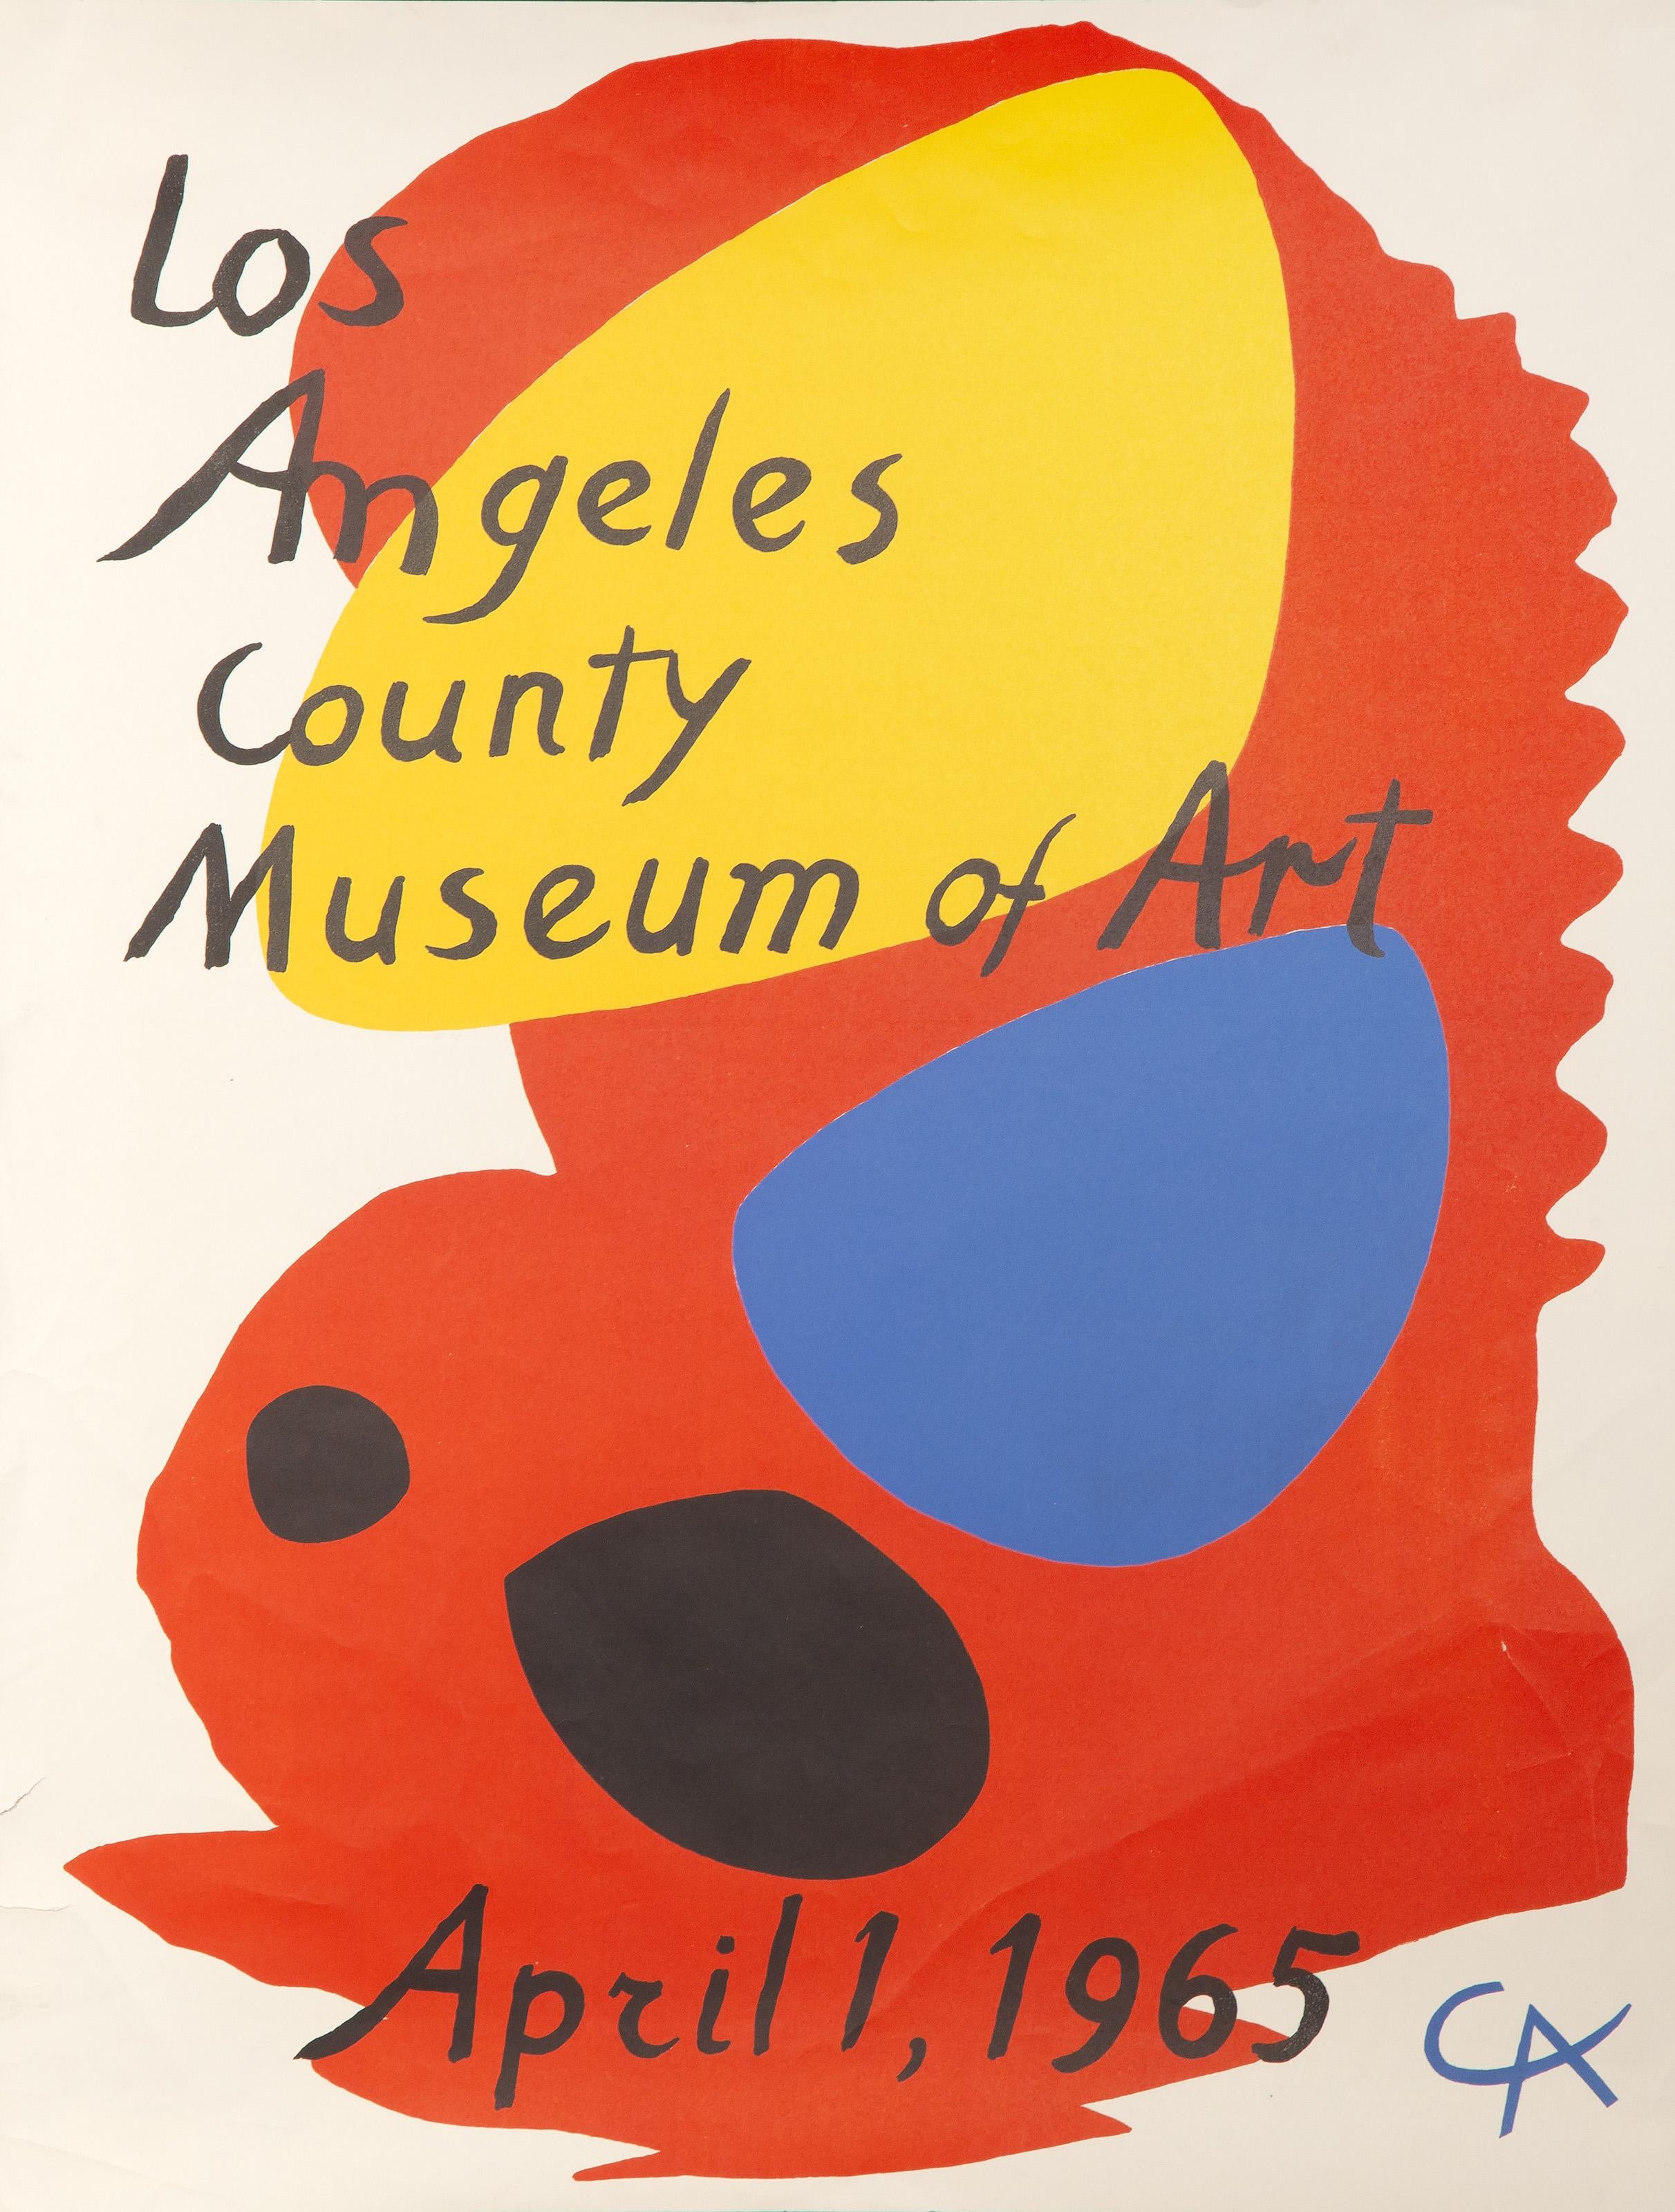 Ein lithografiertes Plakat von Alexander Calder für das Los Angeles County Museum of Art (LACMA) aus dem Jahr 1965. Die dynamische Komposition ist auf der Platte signiert und datiert.

Ausstellungsplakat: Los Angeles County Museum für